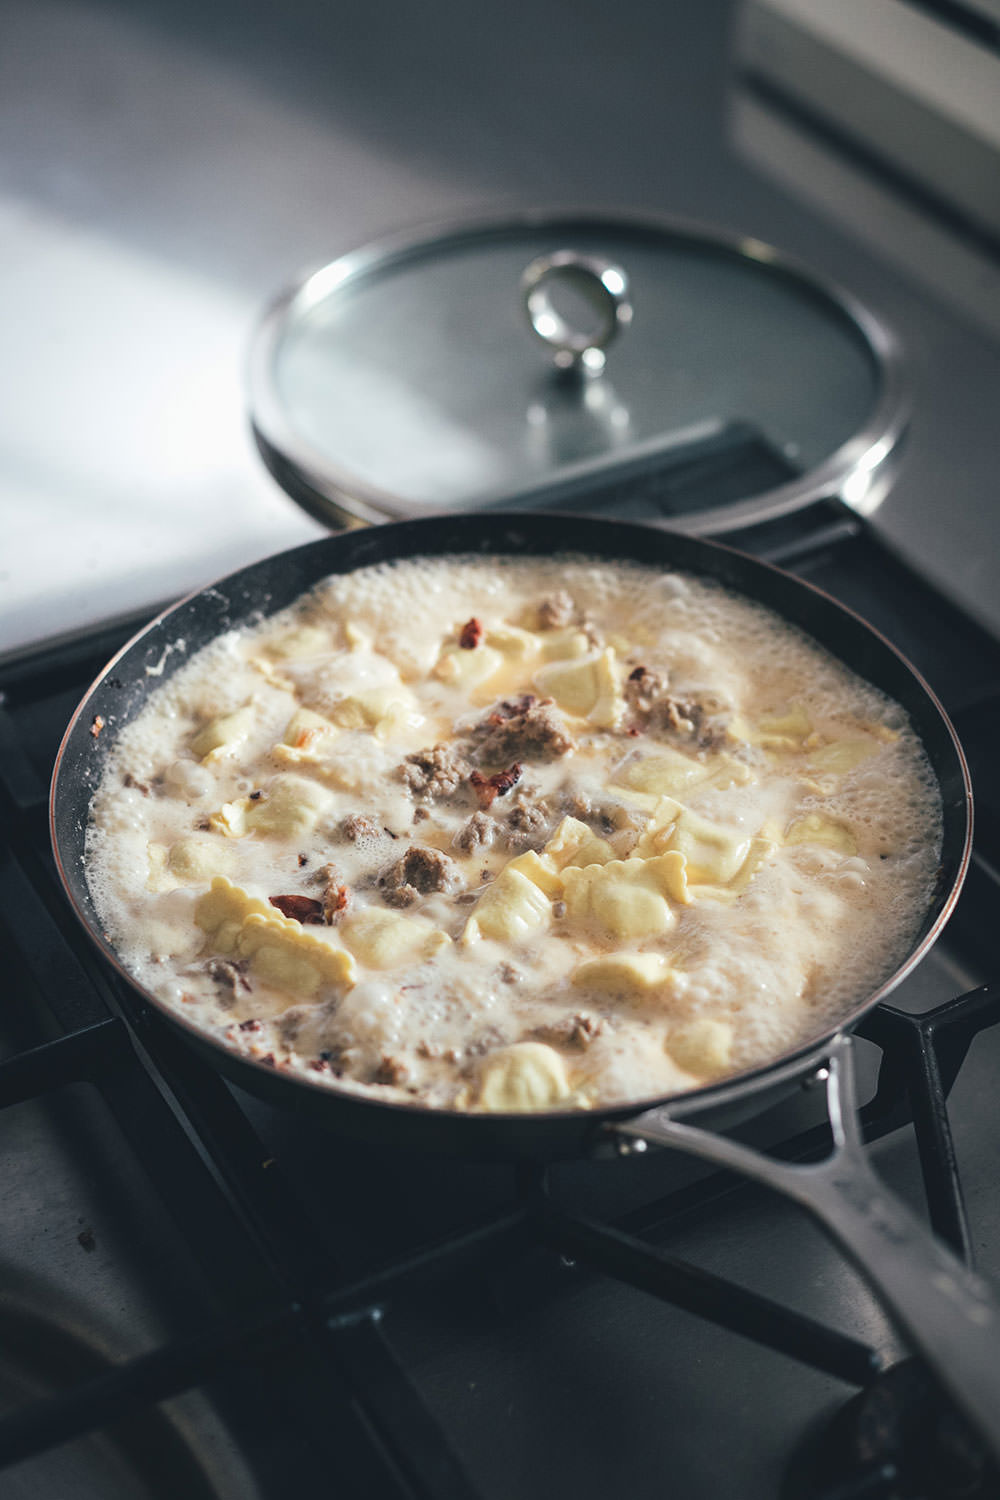 Rezept für One Pan Ravioli mit Bacon, Mett und Spinat in Sahnesauce | schnelle Feierabendküche | moeyskitchen.com #rezept #kochen #feierabendküche #schnellerezepte #onepan #onepot #ravioli #foodblogger #pasta